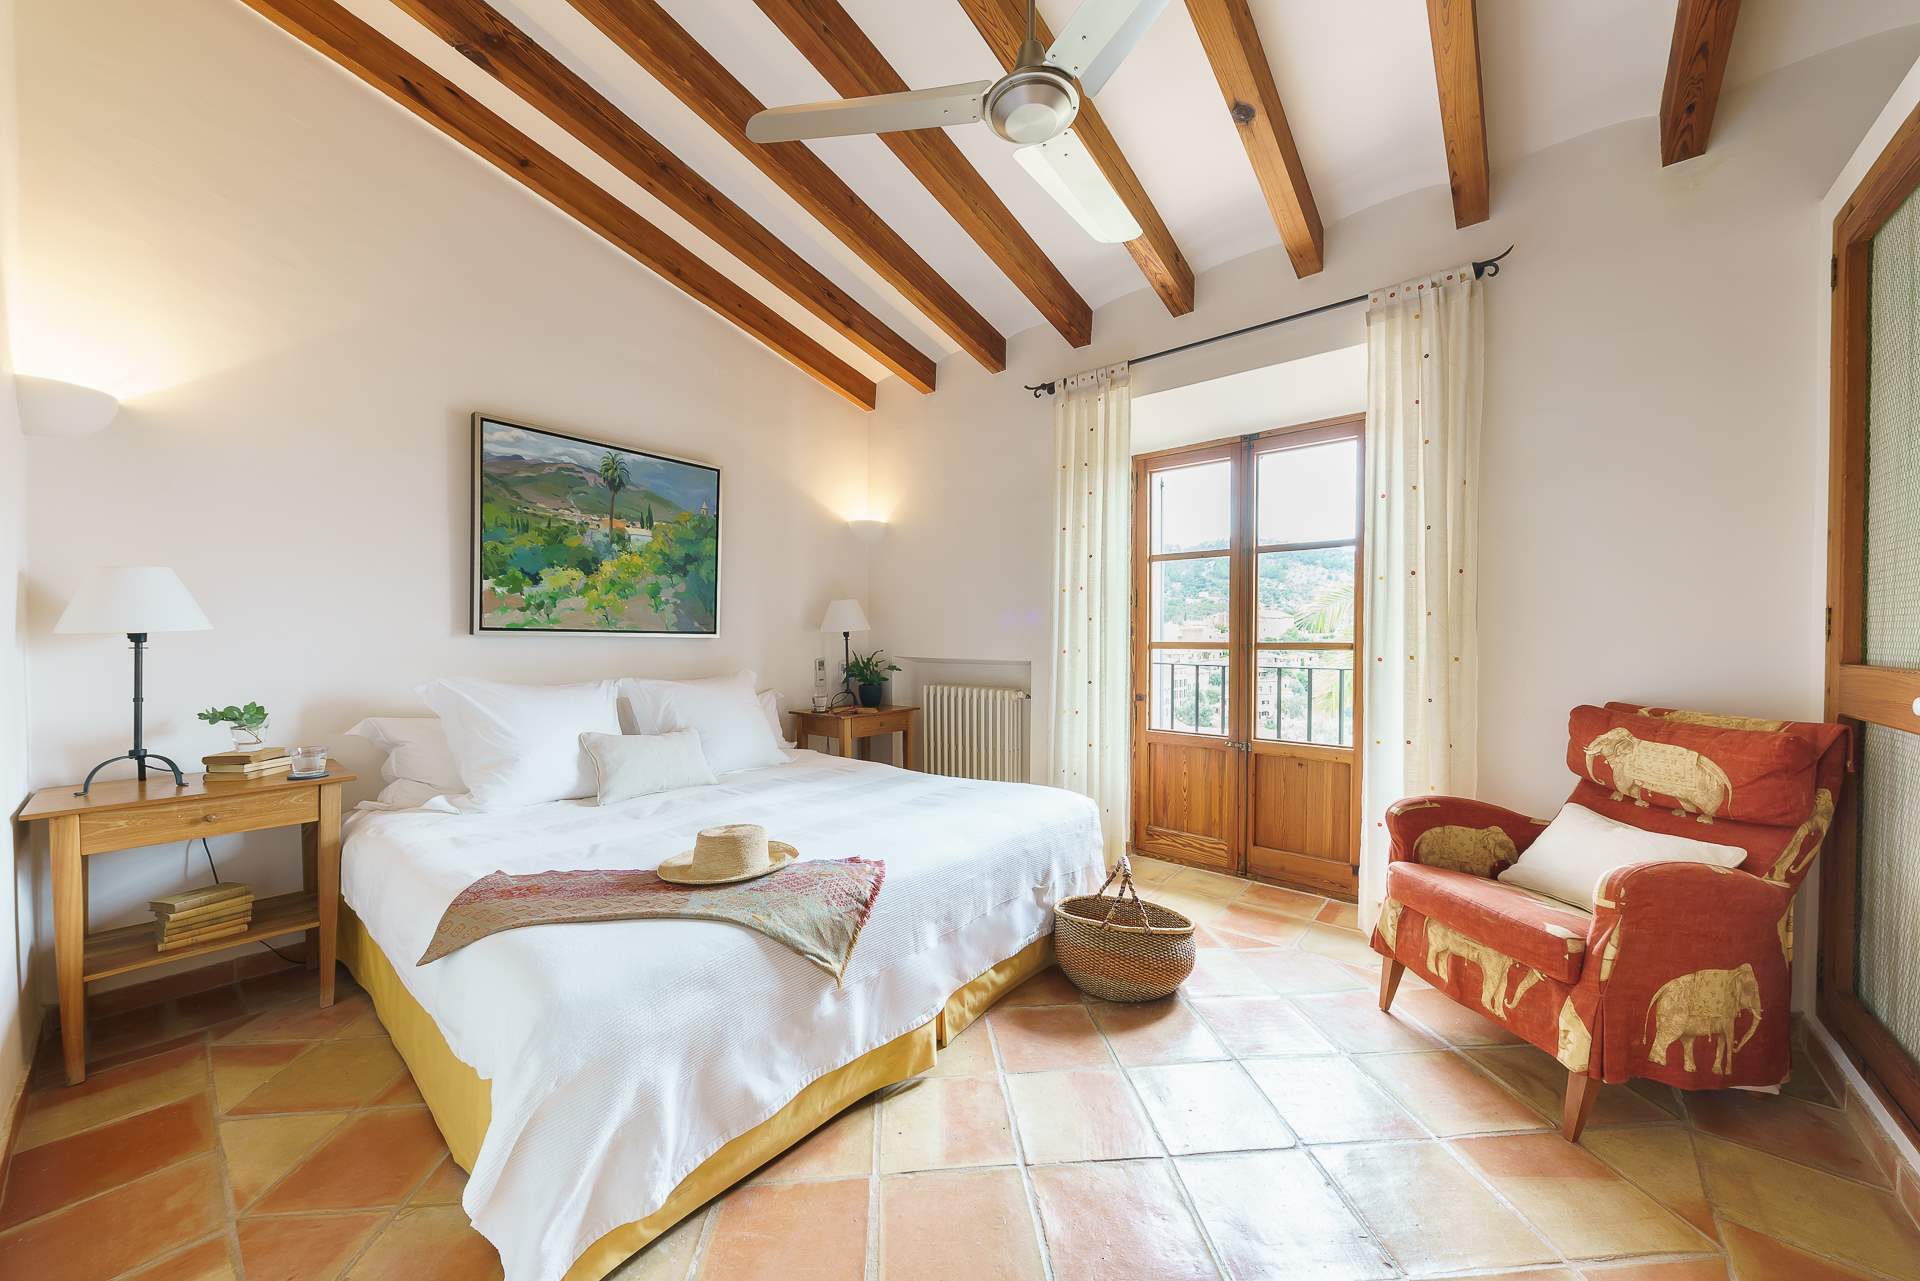 Sa Tanca, 3 Bedroom Rental, 3 bedroom villa in Soller & Deia, Majorca Photo #24